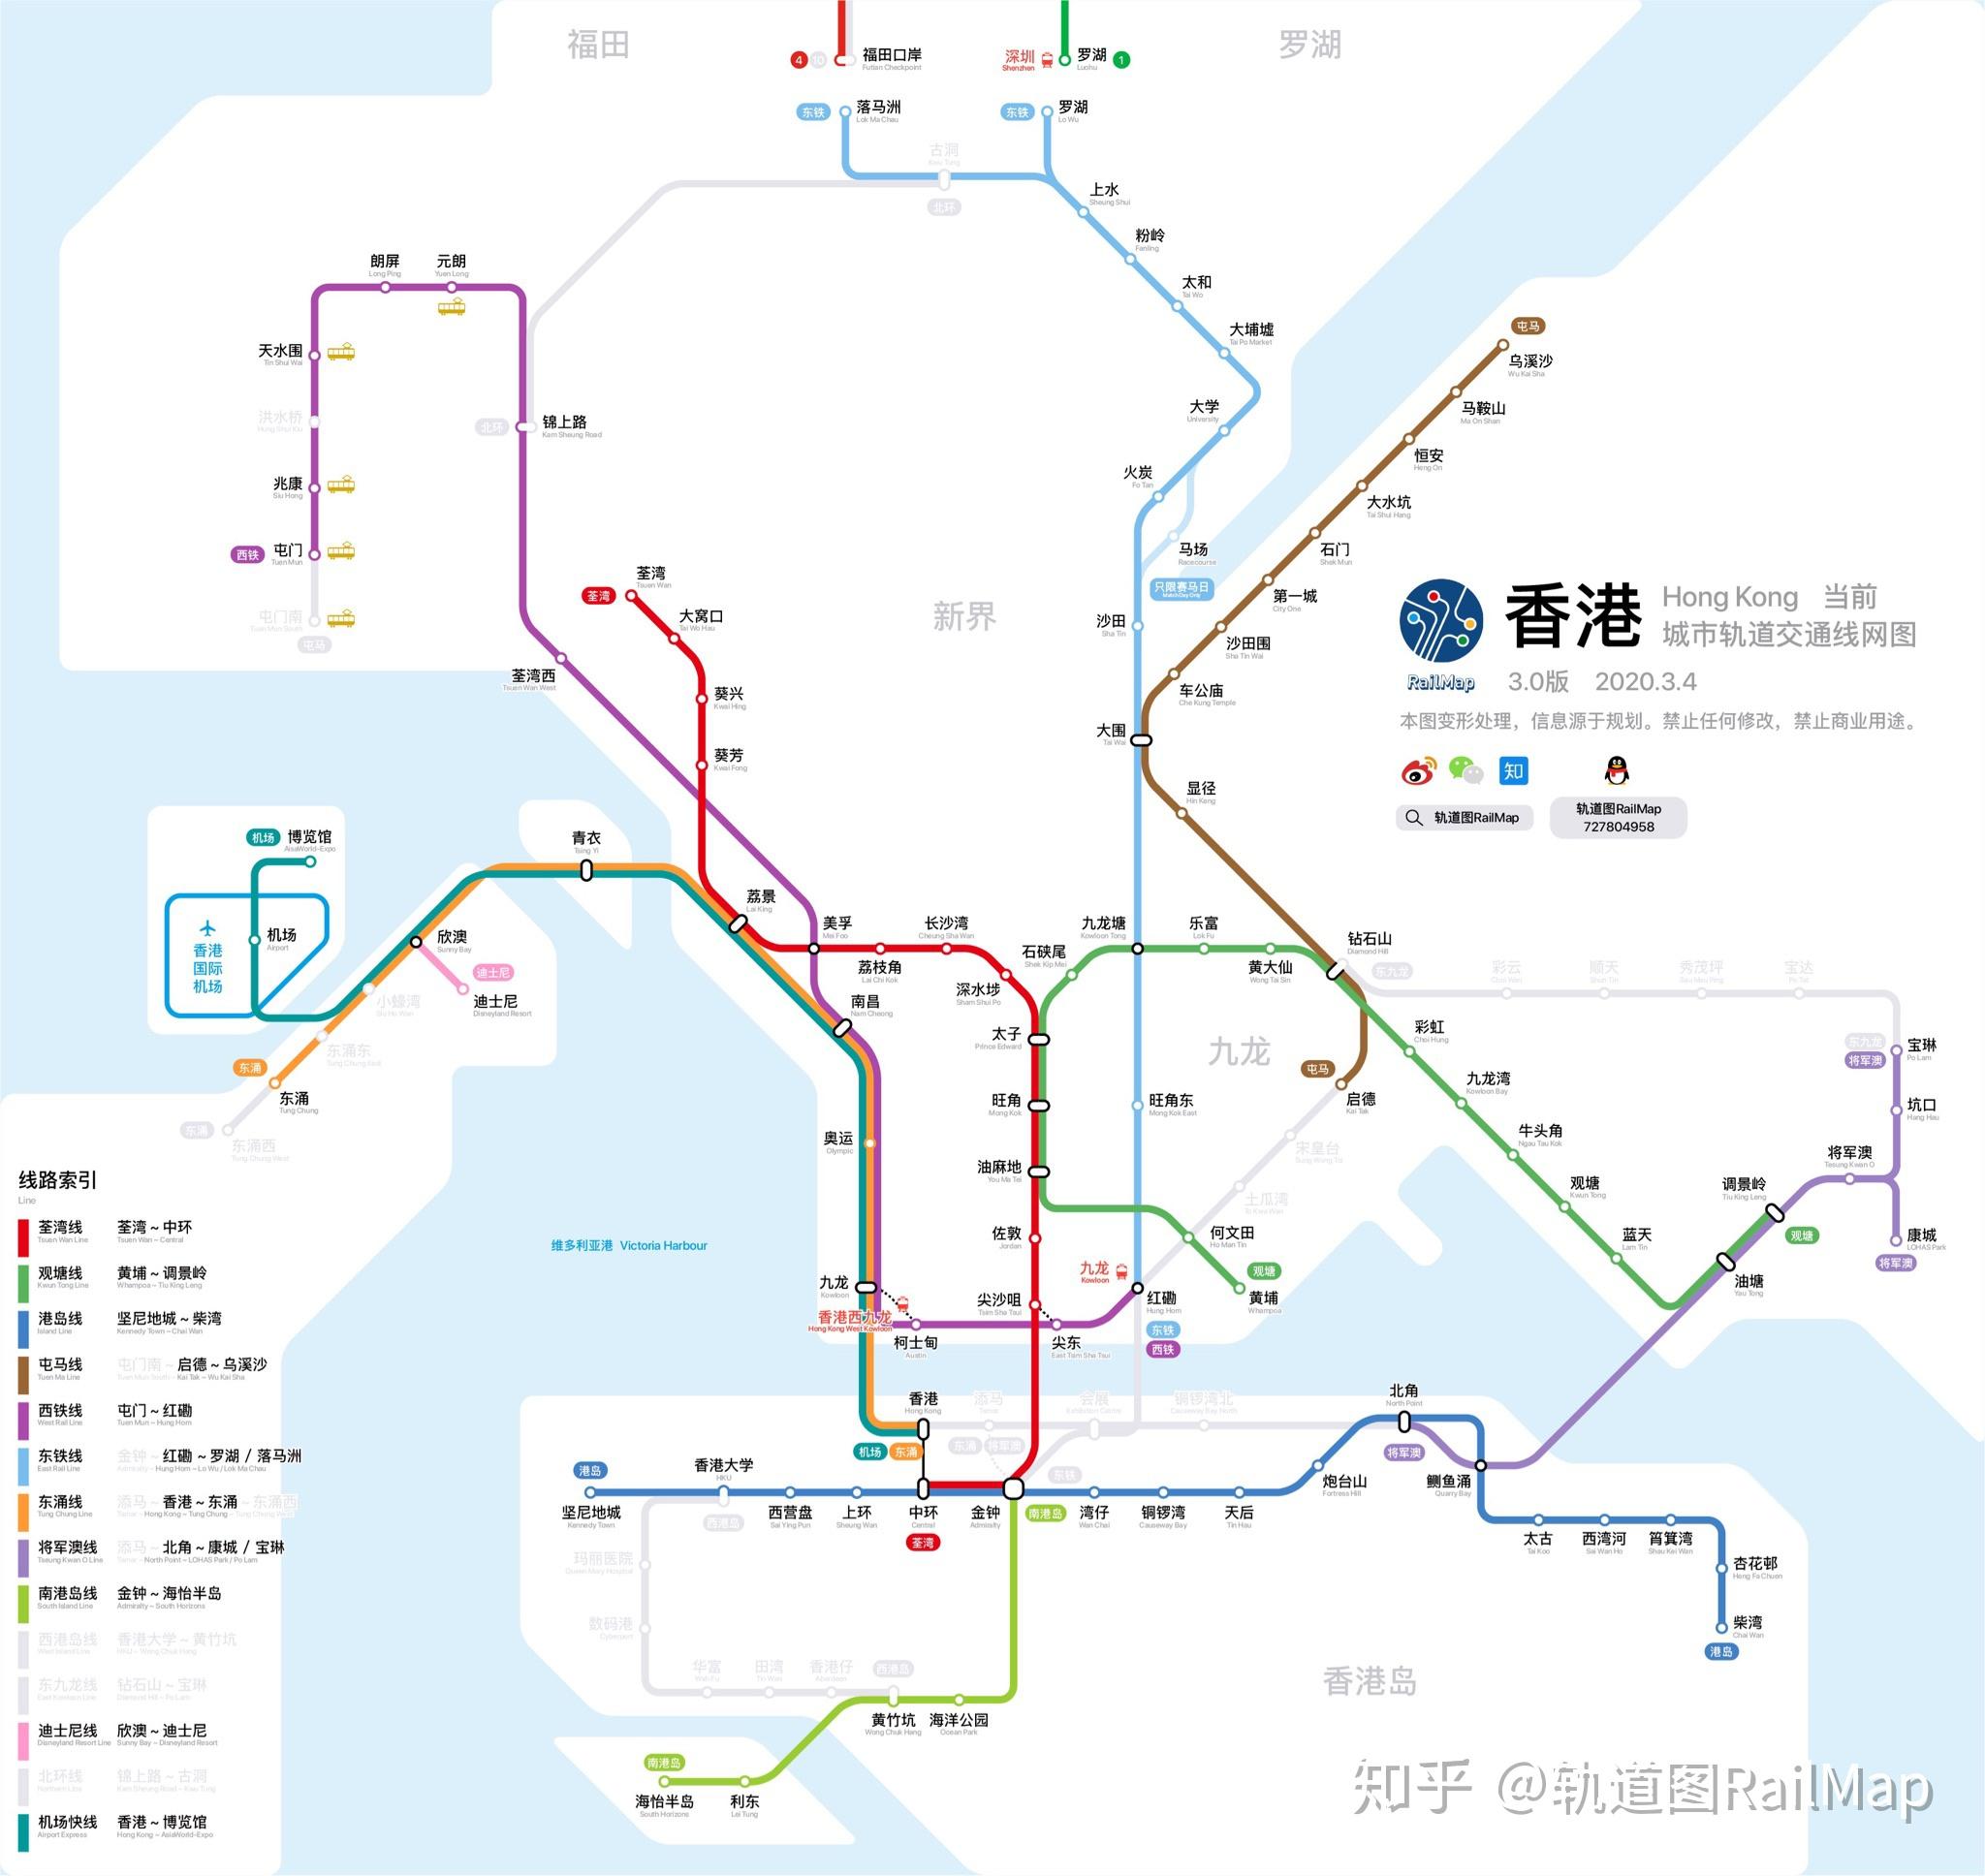 【轨道图railmap】香港轨道交通线网图2027年/当前